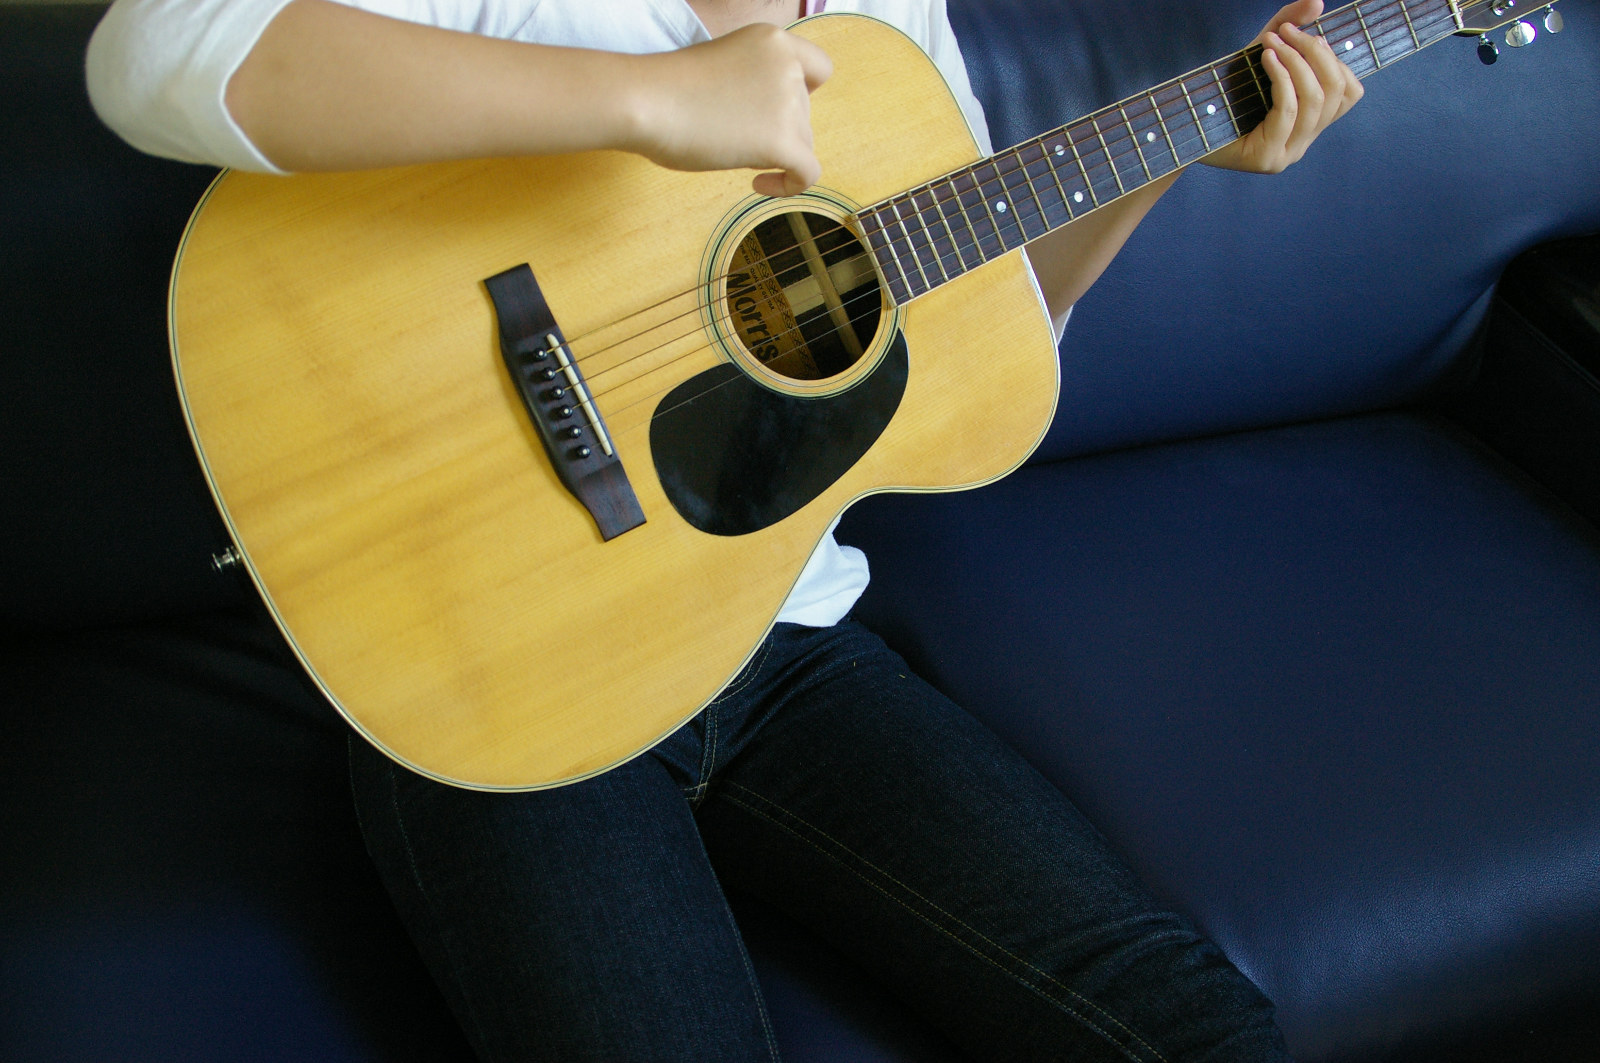 アコースティックギターを引く女性 無料画像 フリー写真素材